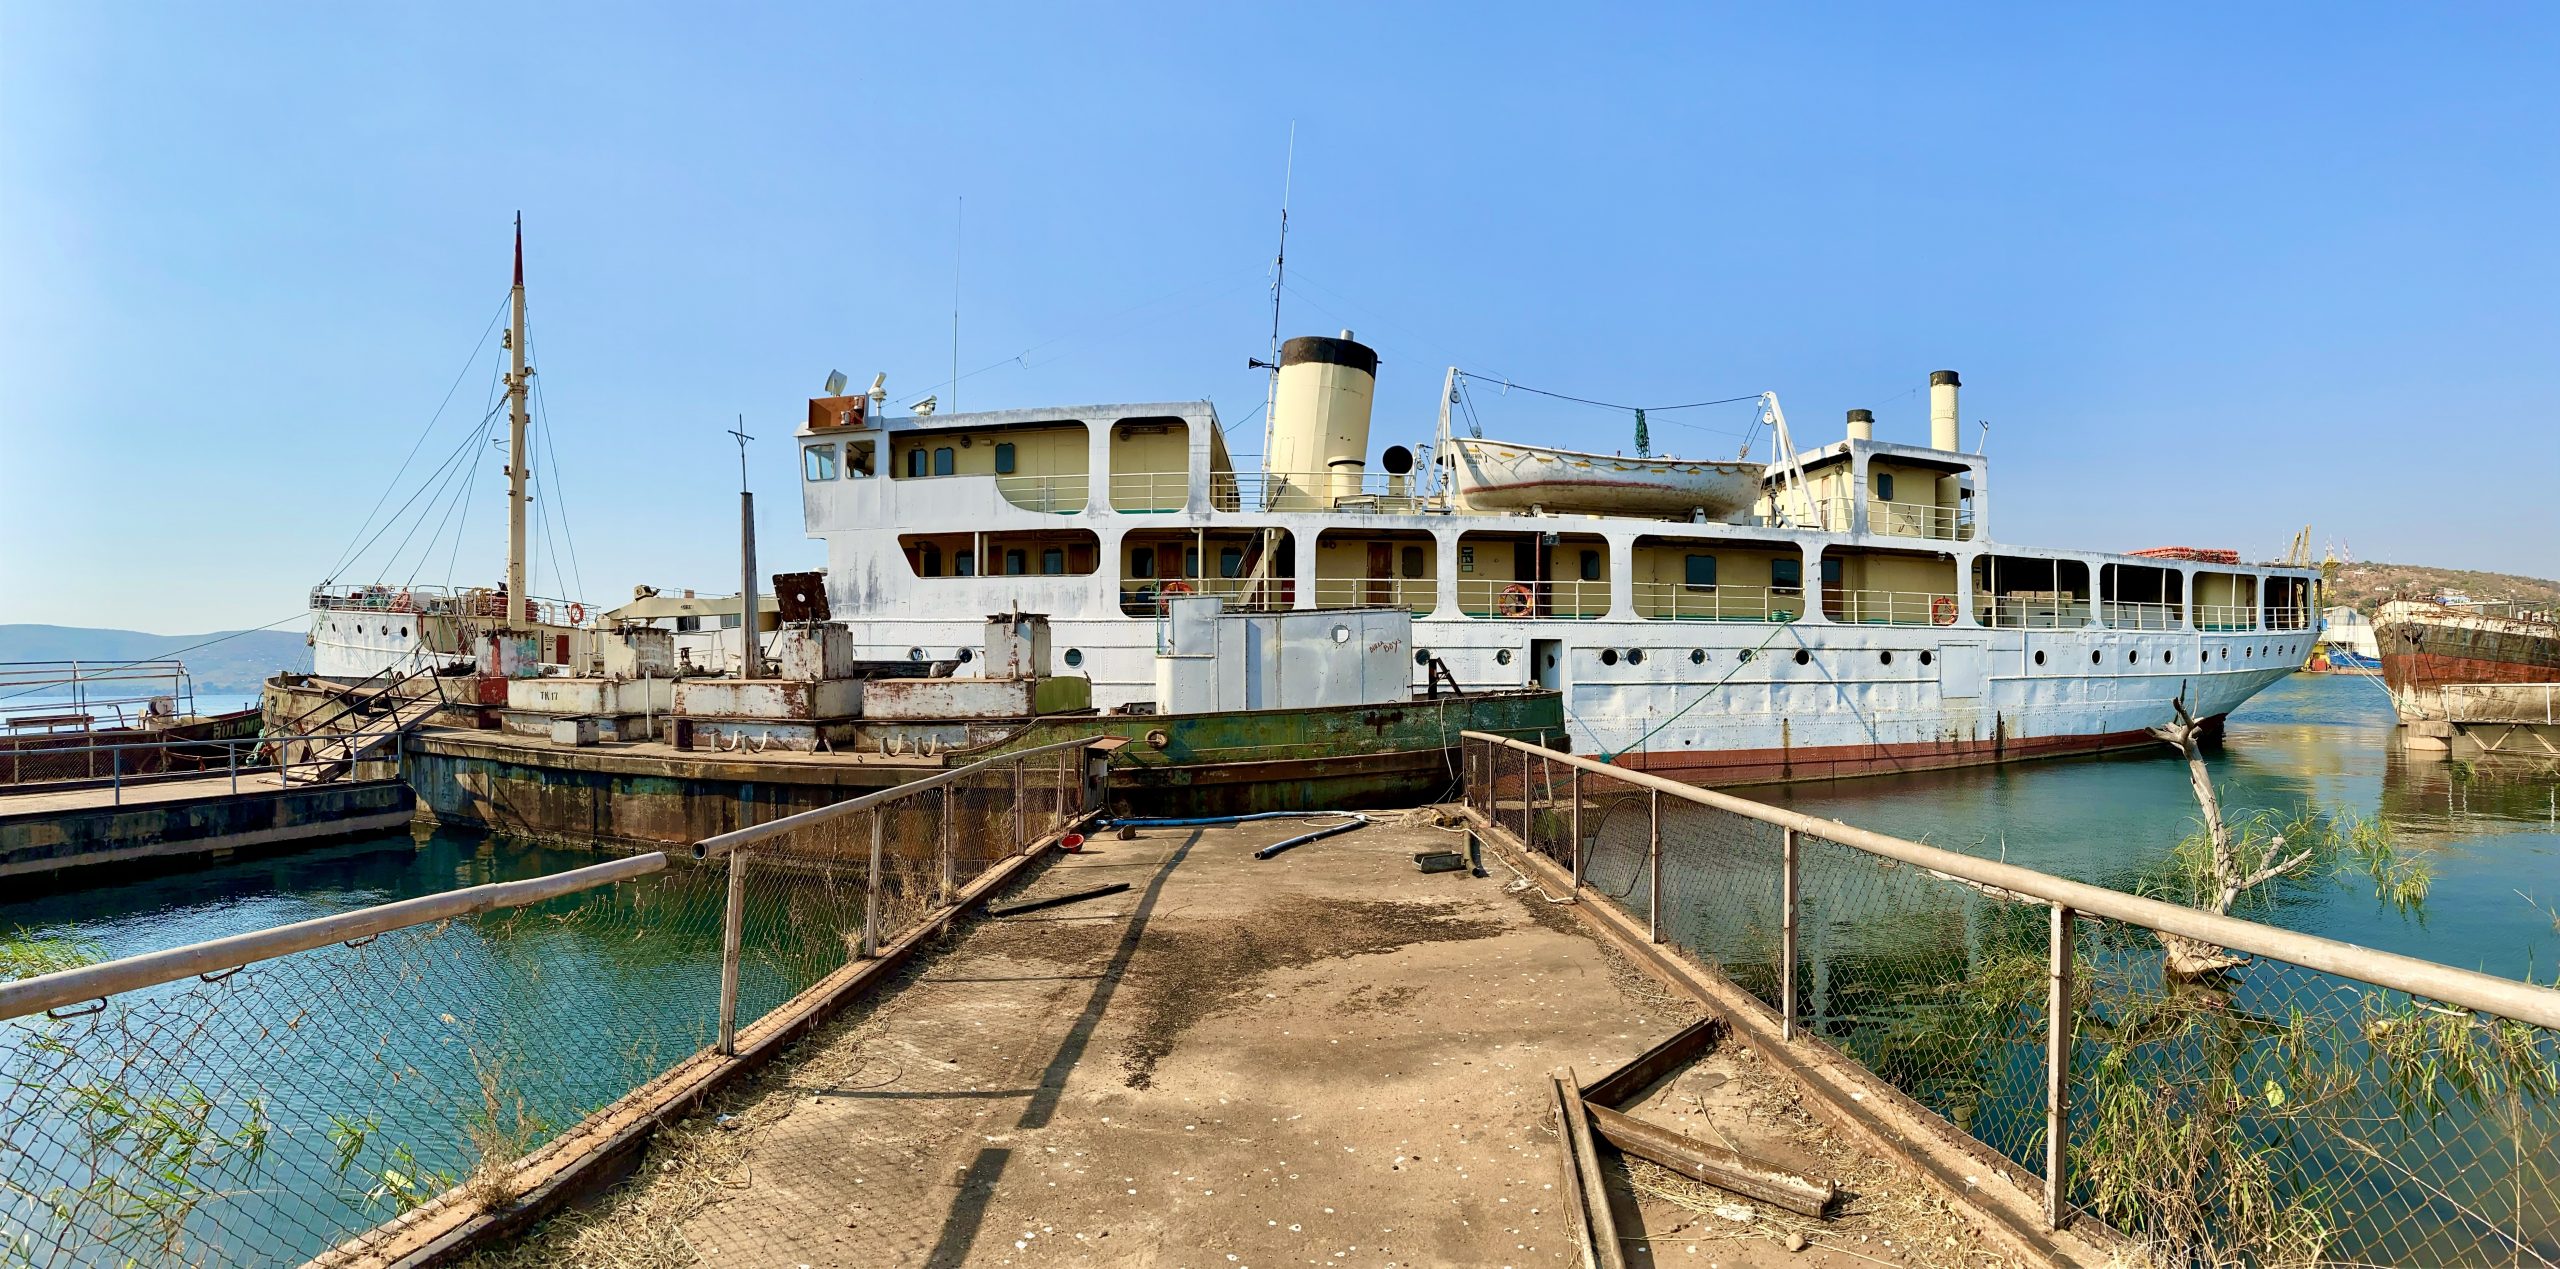 MV Liemba am Tanganjika-See in Kigoma